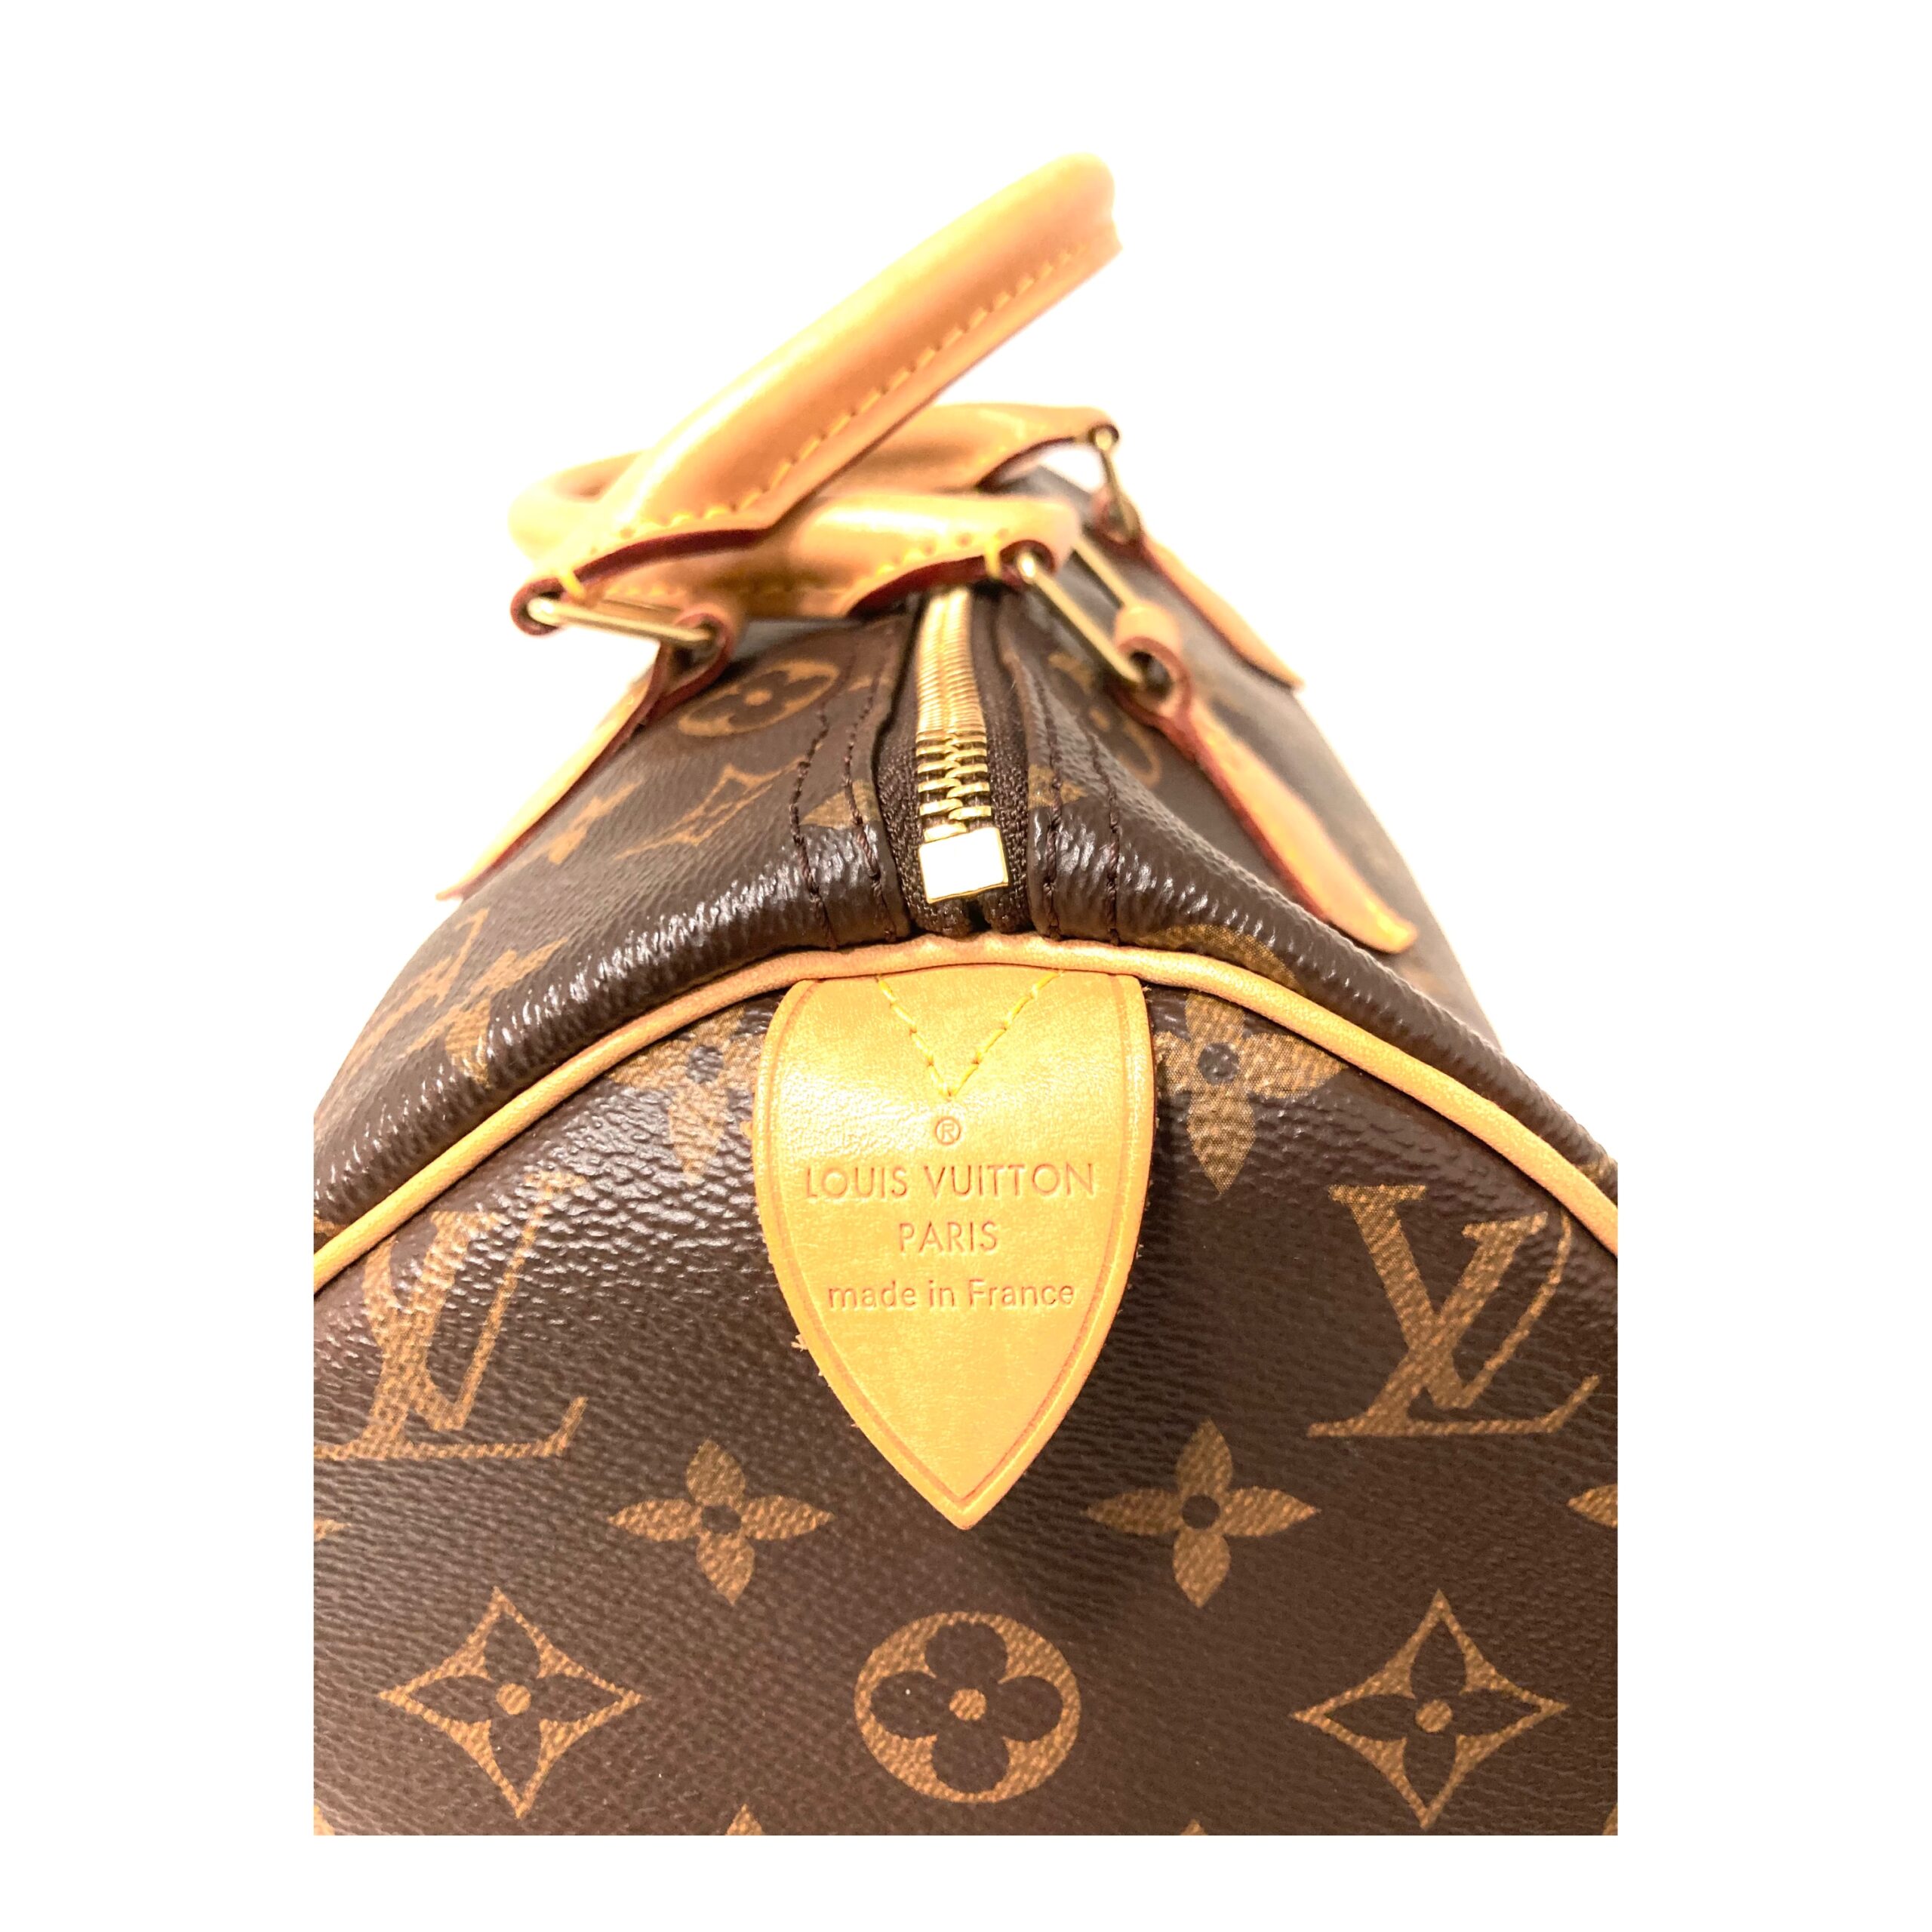 Louis Vuitton 𝐒𝐀𝐂 𝐏𝐋𝐀𝐓 𝐁𝐁 sheet music bag – Rachellebags